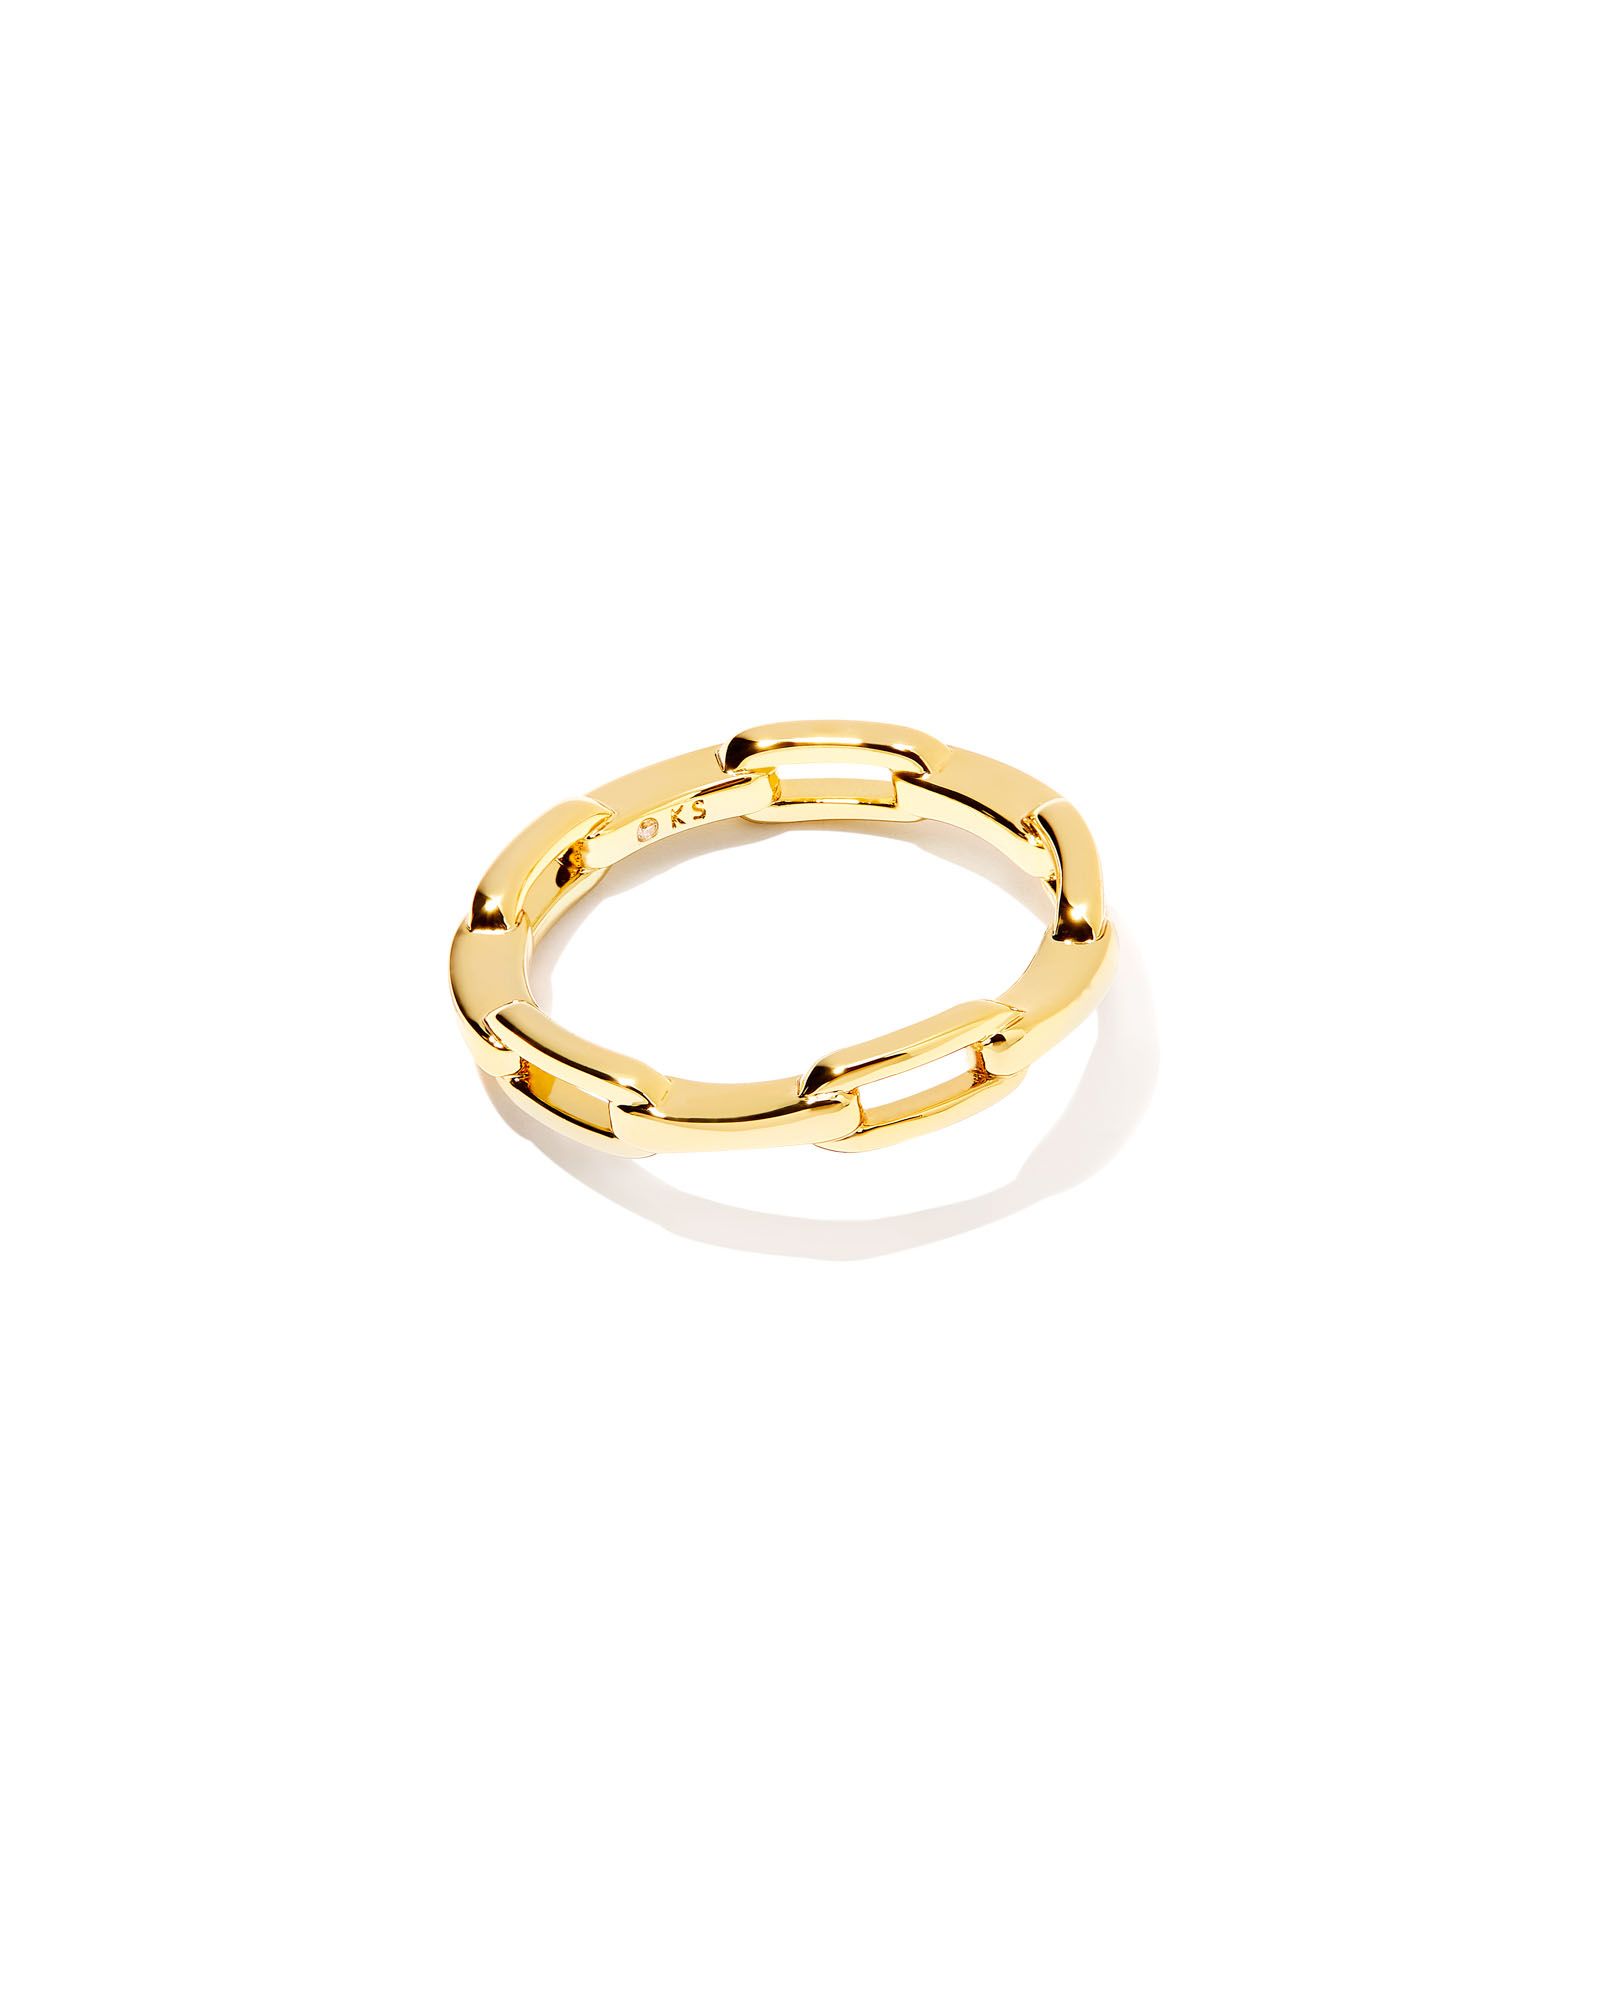 Andi Band Ring in Gold | Kendra Scott | Kendra Scott